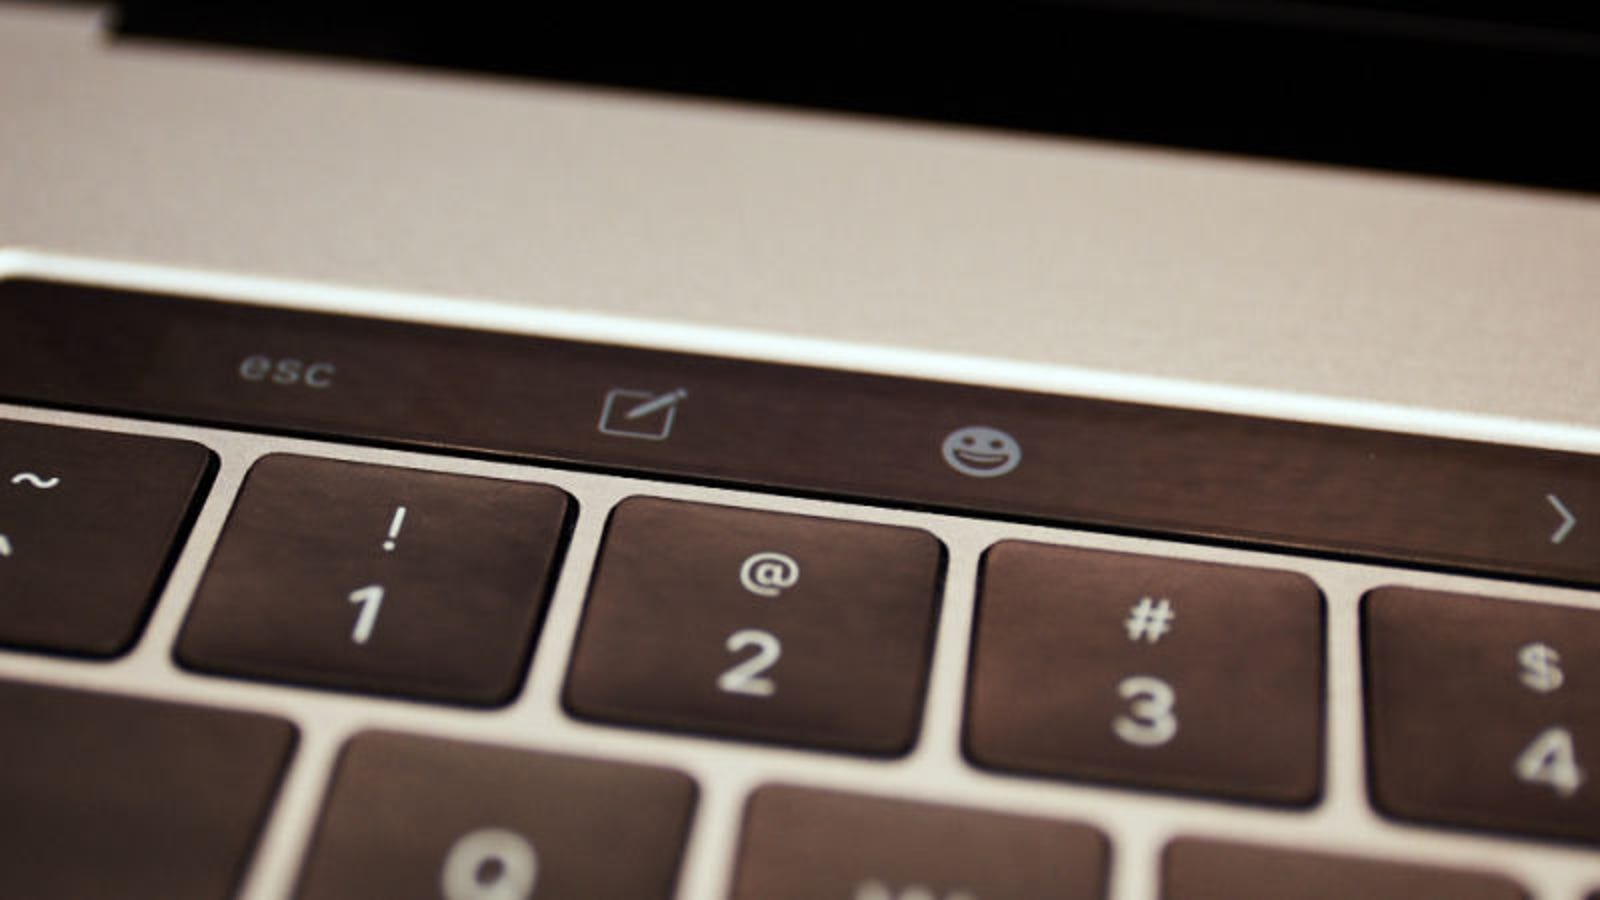 Apple سوف تبدأ في وقف لوحة المفاتيح فراشة من ماك بوك لها هذا العام ، وفقا للشائعات 126